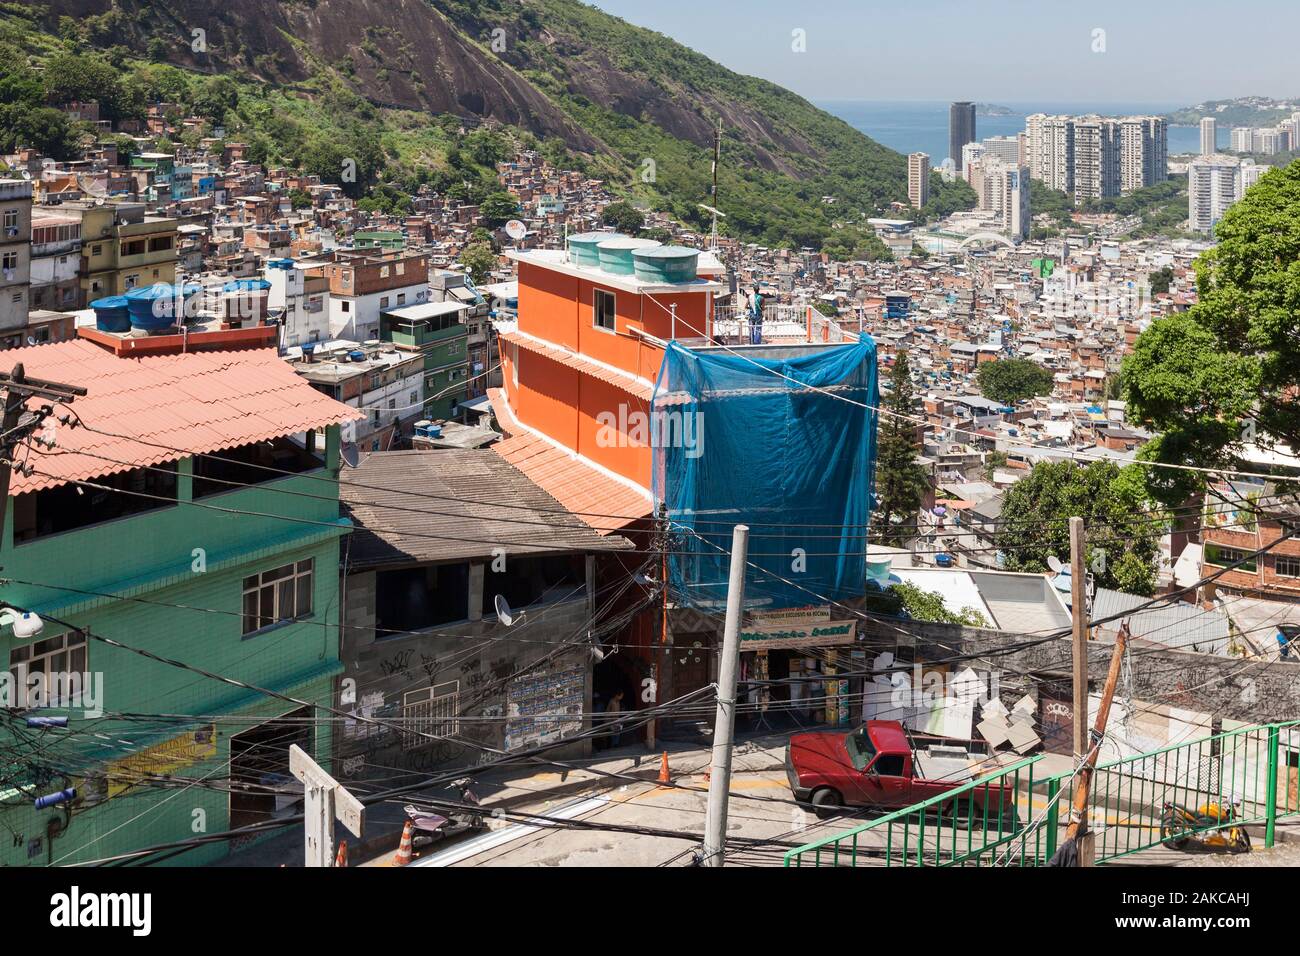 Il Brasile, Stato di Rio de Janeiro, città di Rio de Janeiro, favela Rocinha, paesaggi Carioca tra la montagna e il mare classificato Patrimonio Mondiale dell'UNESCO, la vista in alzata di una favela street e il mare in background Foto Stock